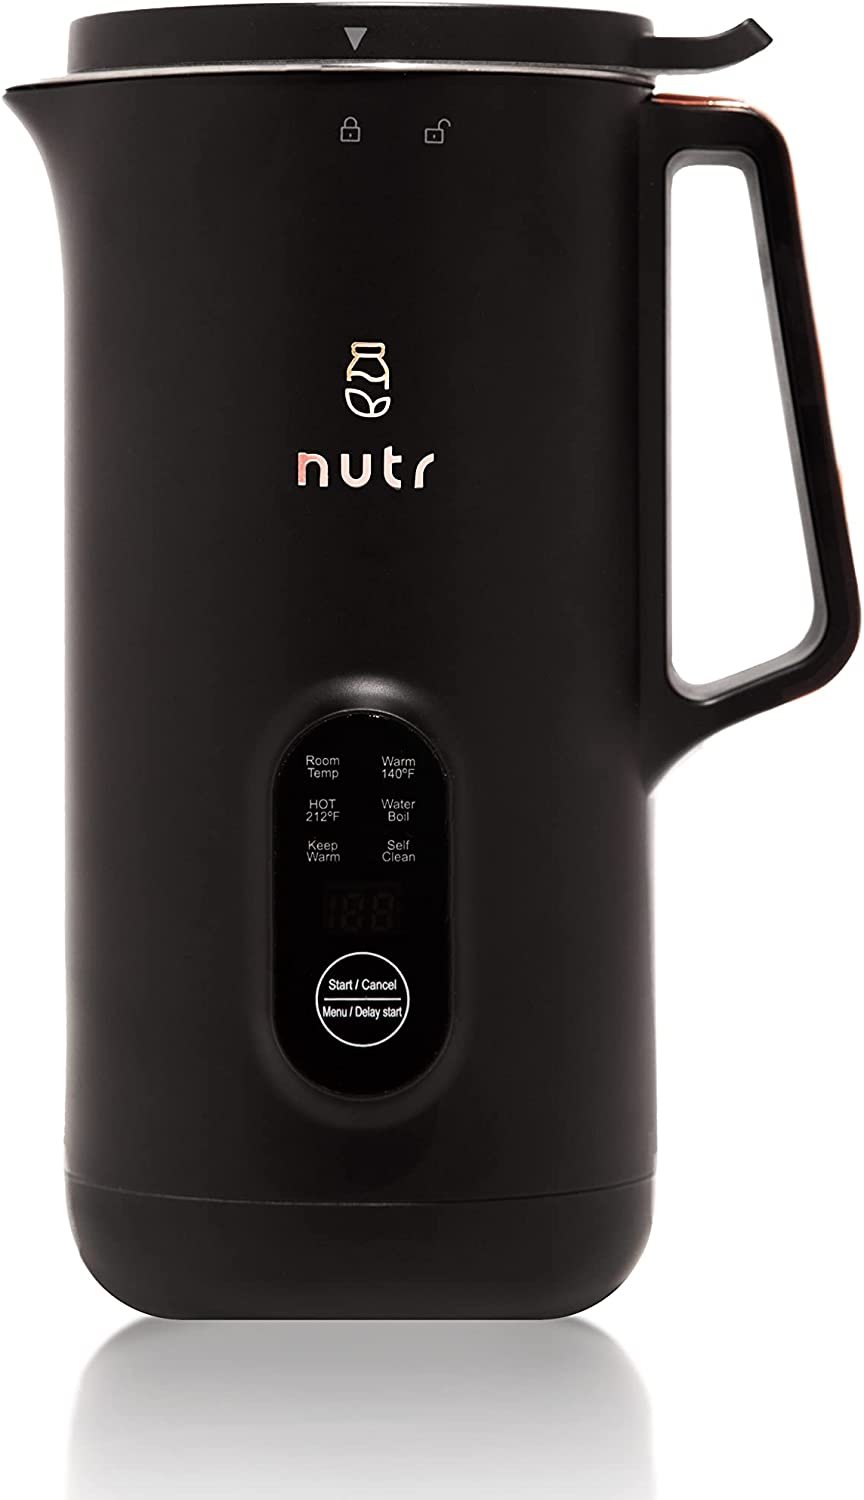 NUTR - Automatic Nut Milk Maker